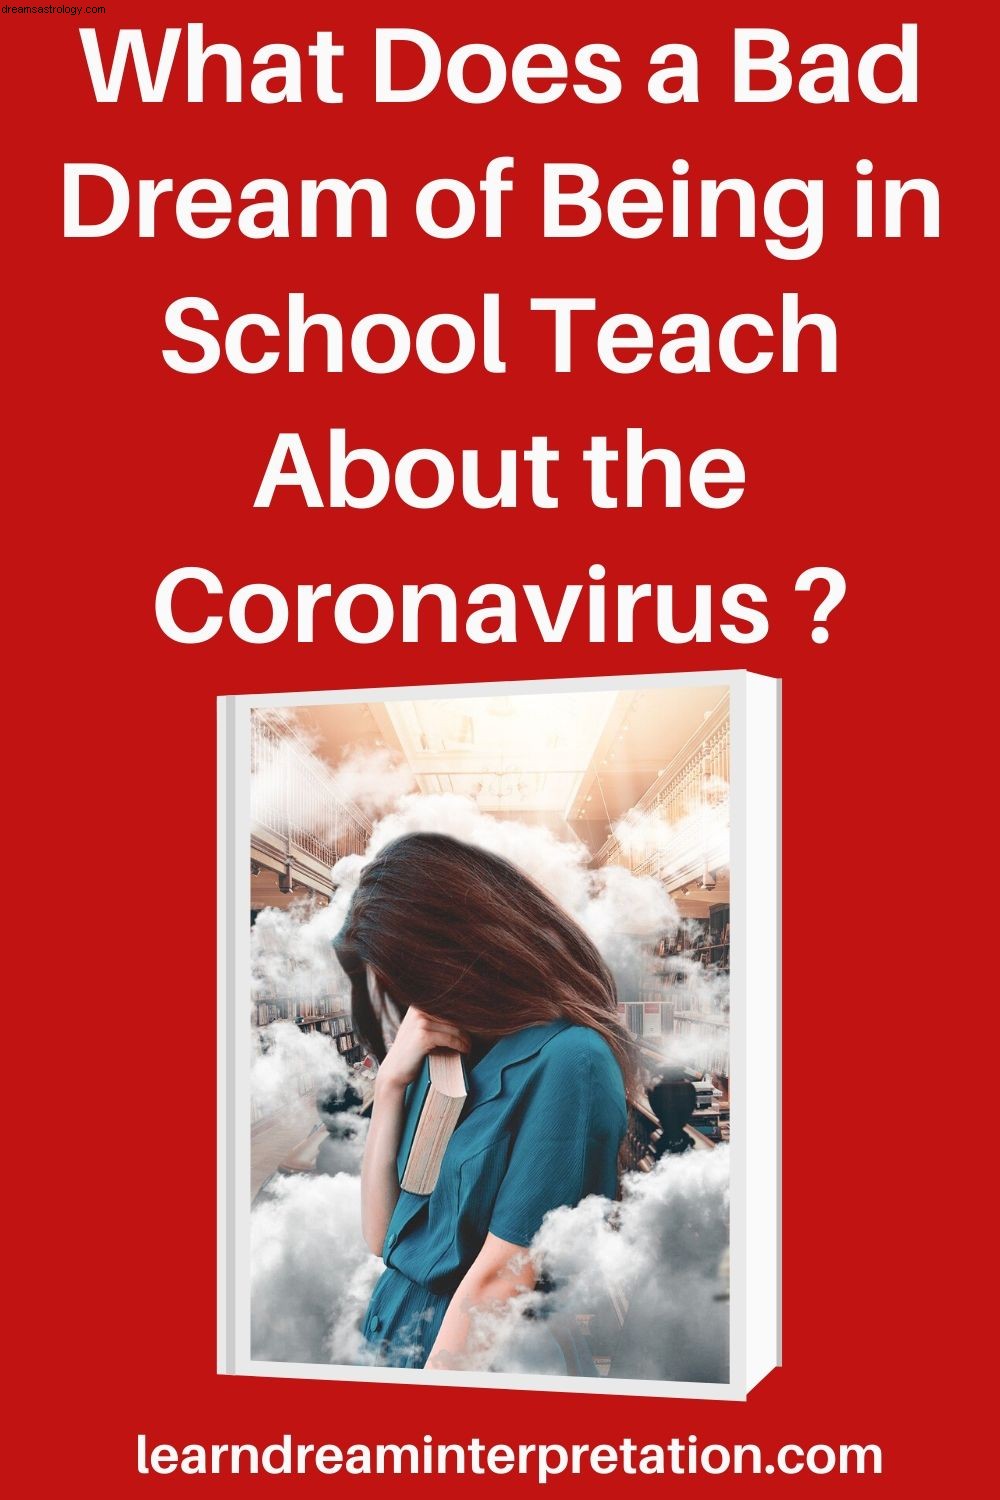 Sonho de escola ruim durante o coronavírus 